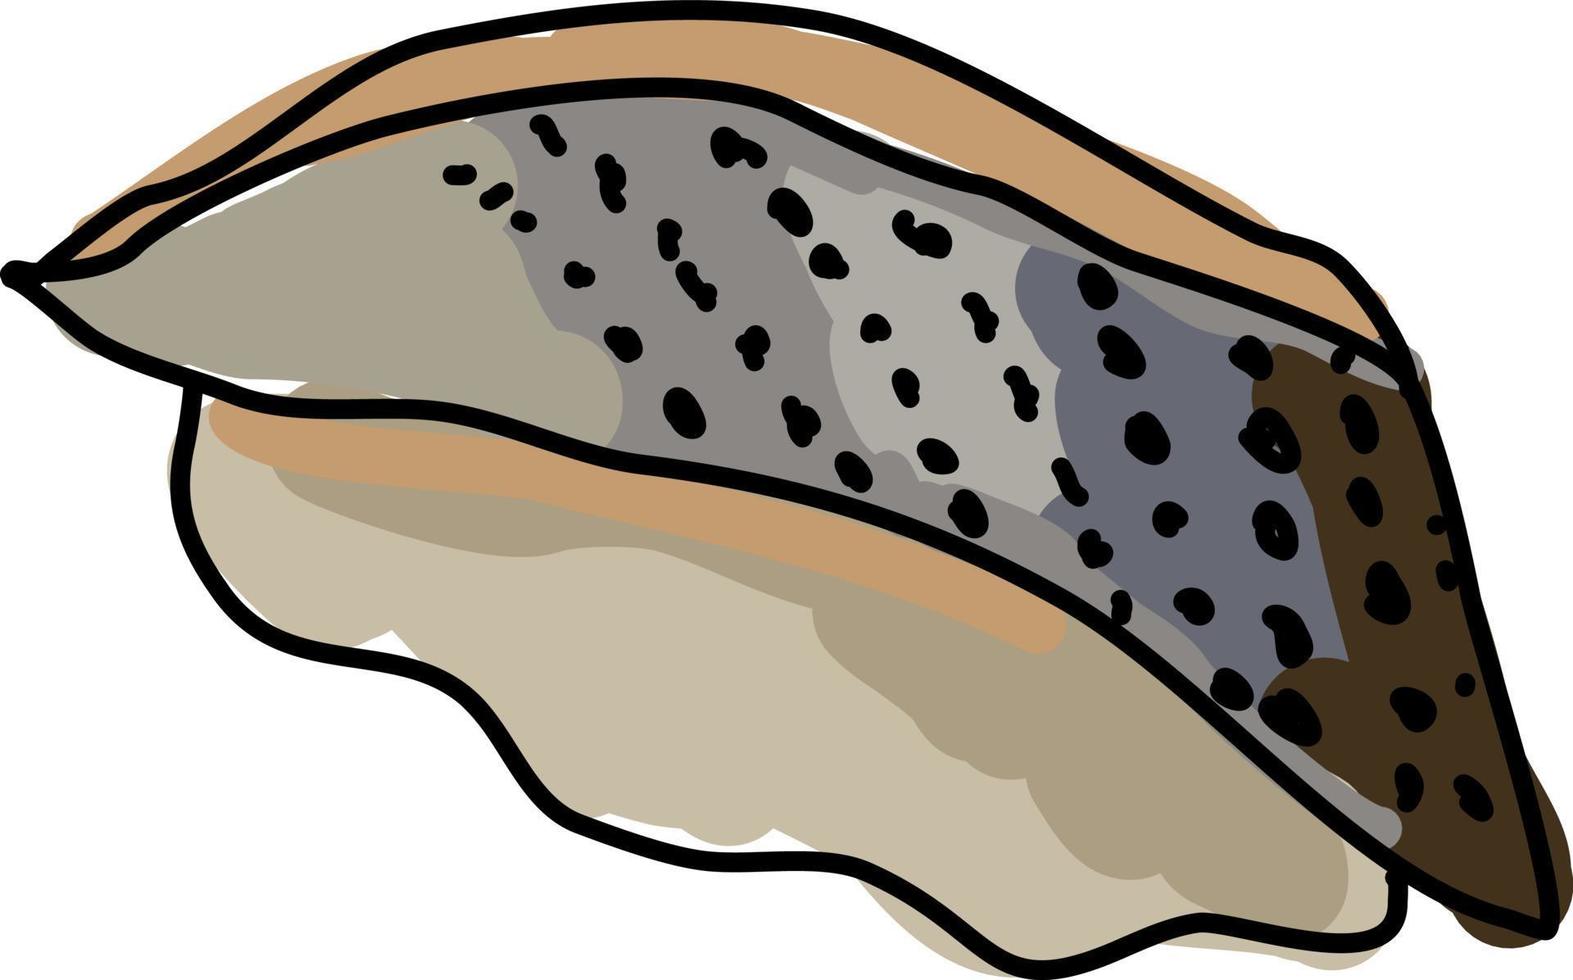 Mackerel, illustration, vector on white background.